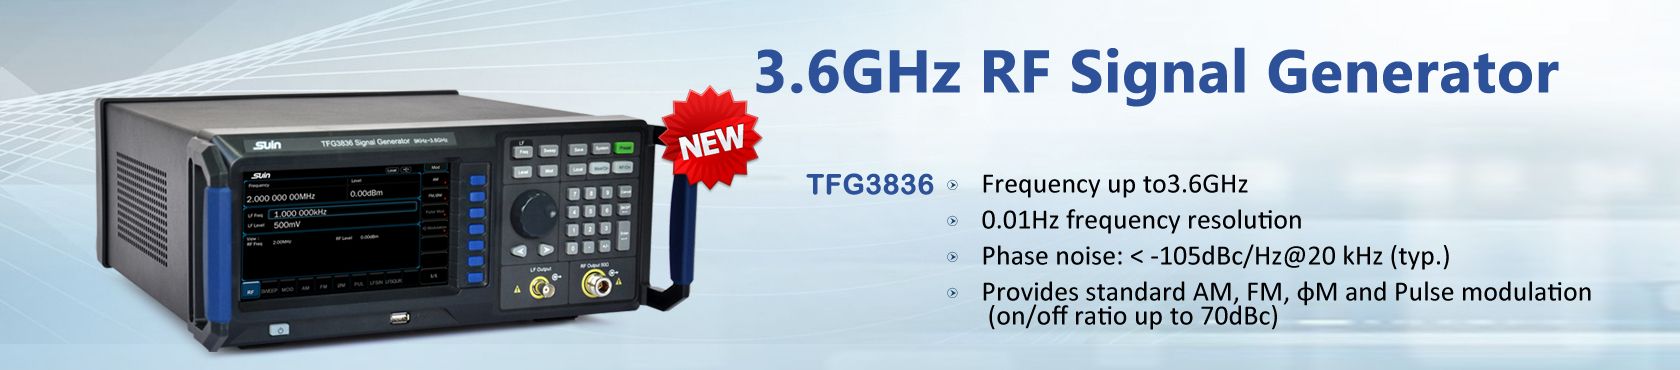 TFG3836 RF Signal Generator